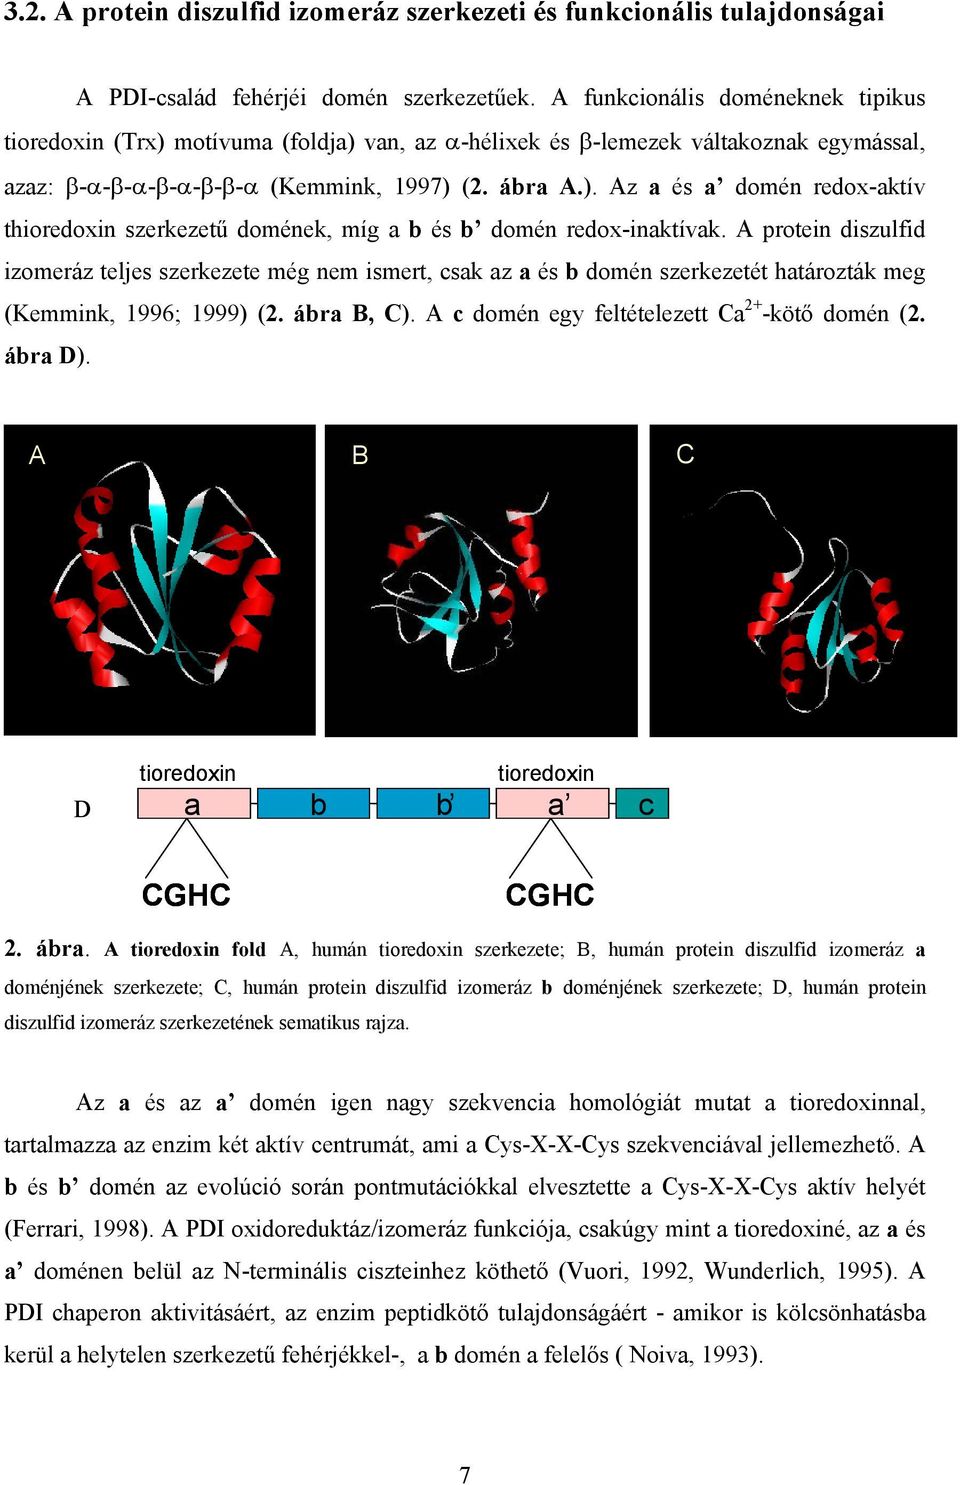 A protein diszulfid izomeráz teljes szerkezete még nem ismert, csak az a és b domén szerkezetét határozták meg (Kemmink, 1996; 1999) (2. ábra B, C). A c domén egy feltételezett Ca 2+ -köt domén (2.